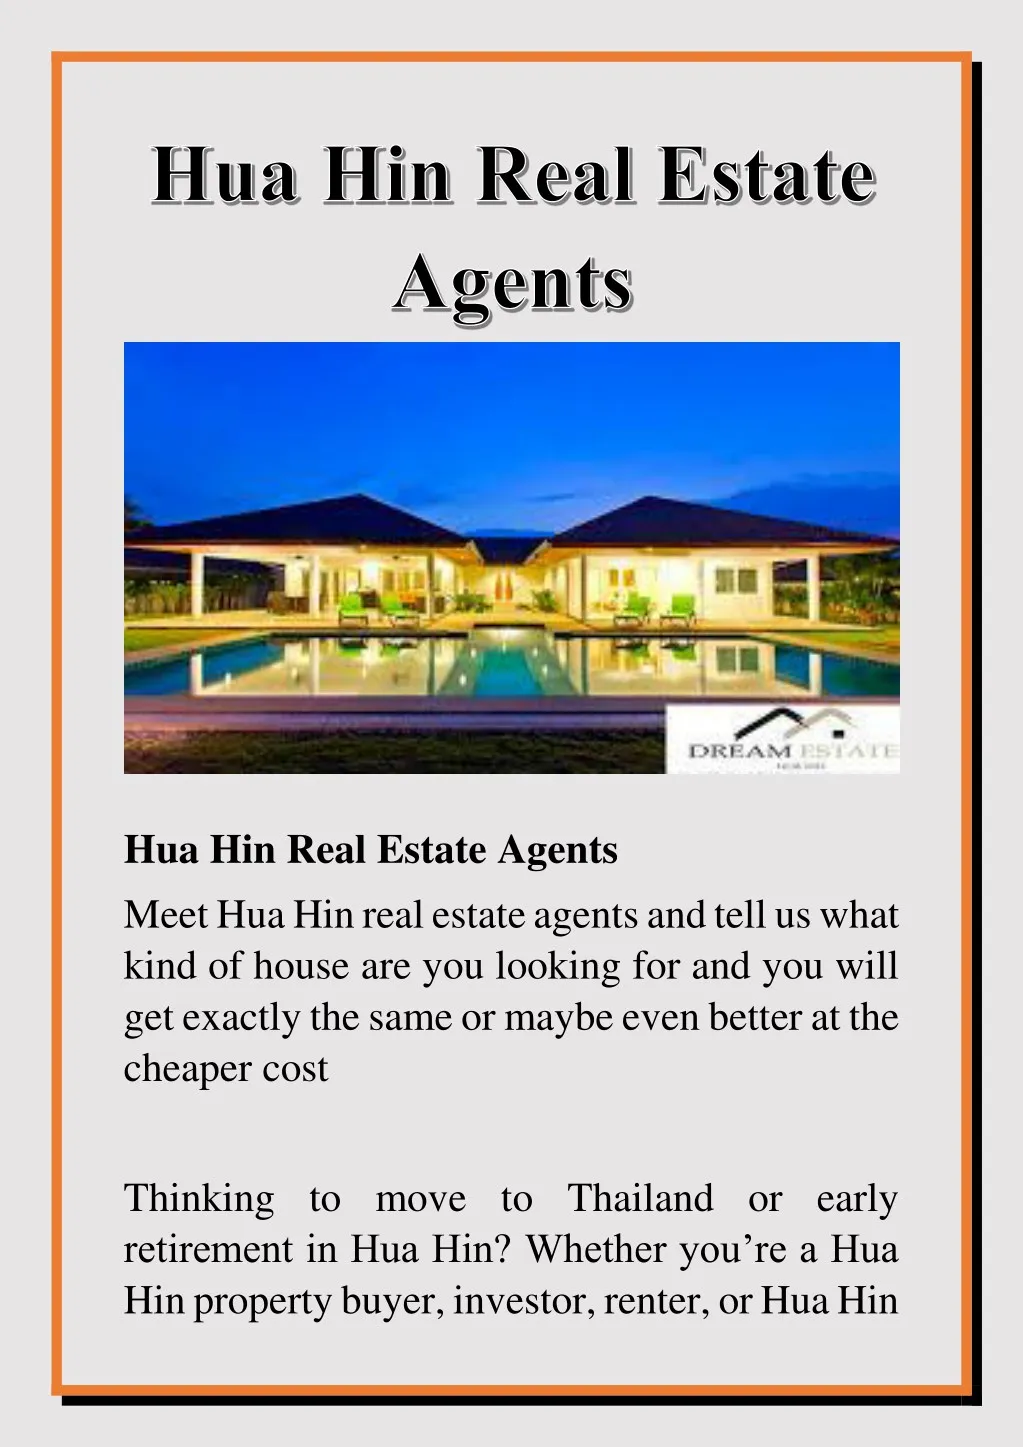 hua hin real estate agents meet hua hin real